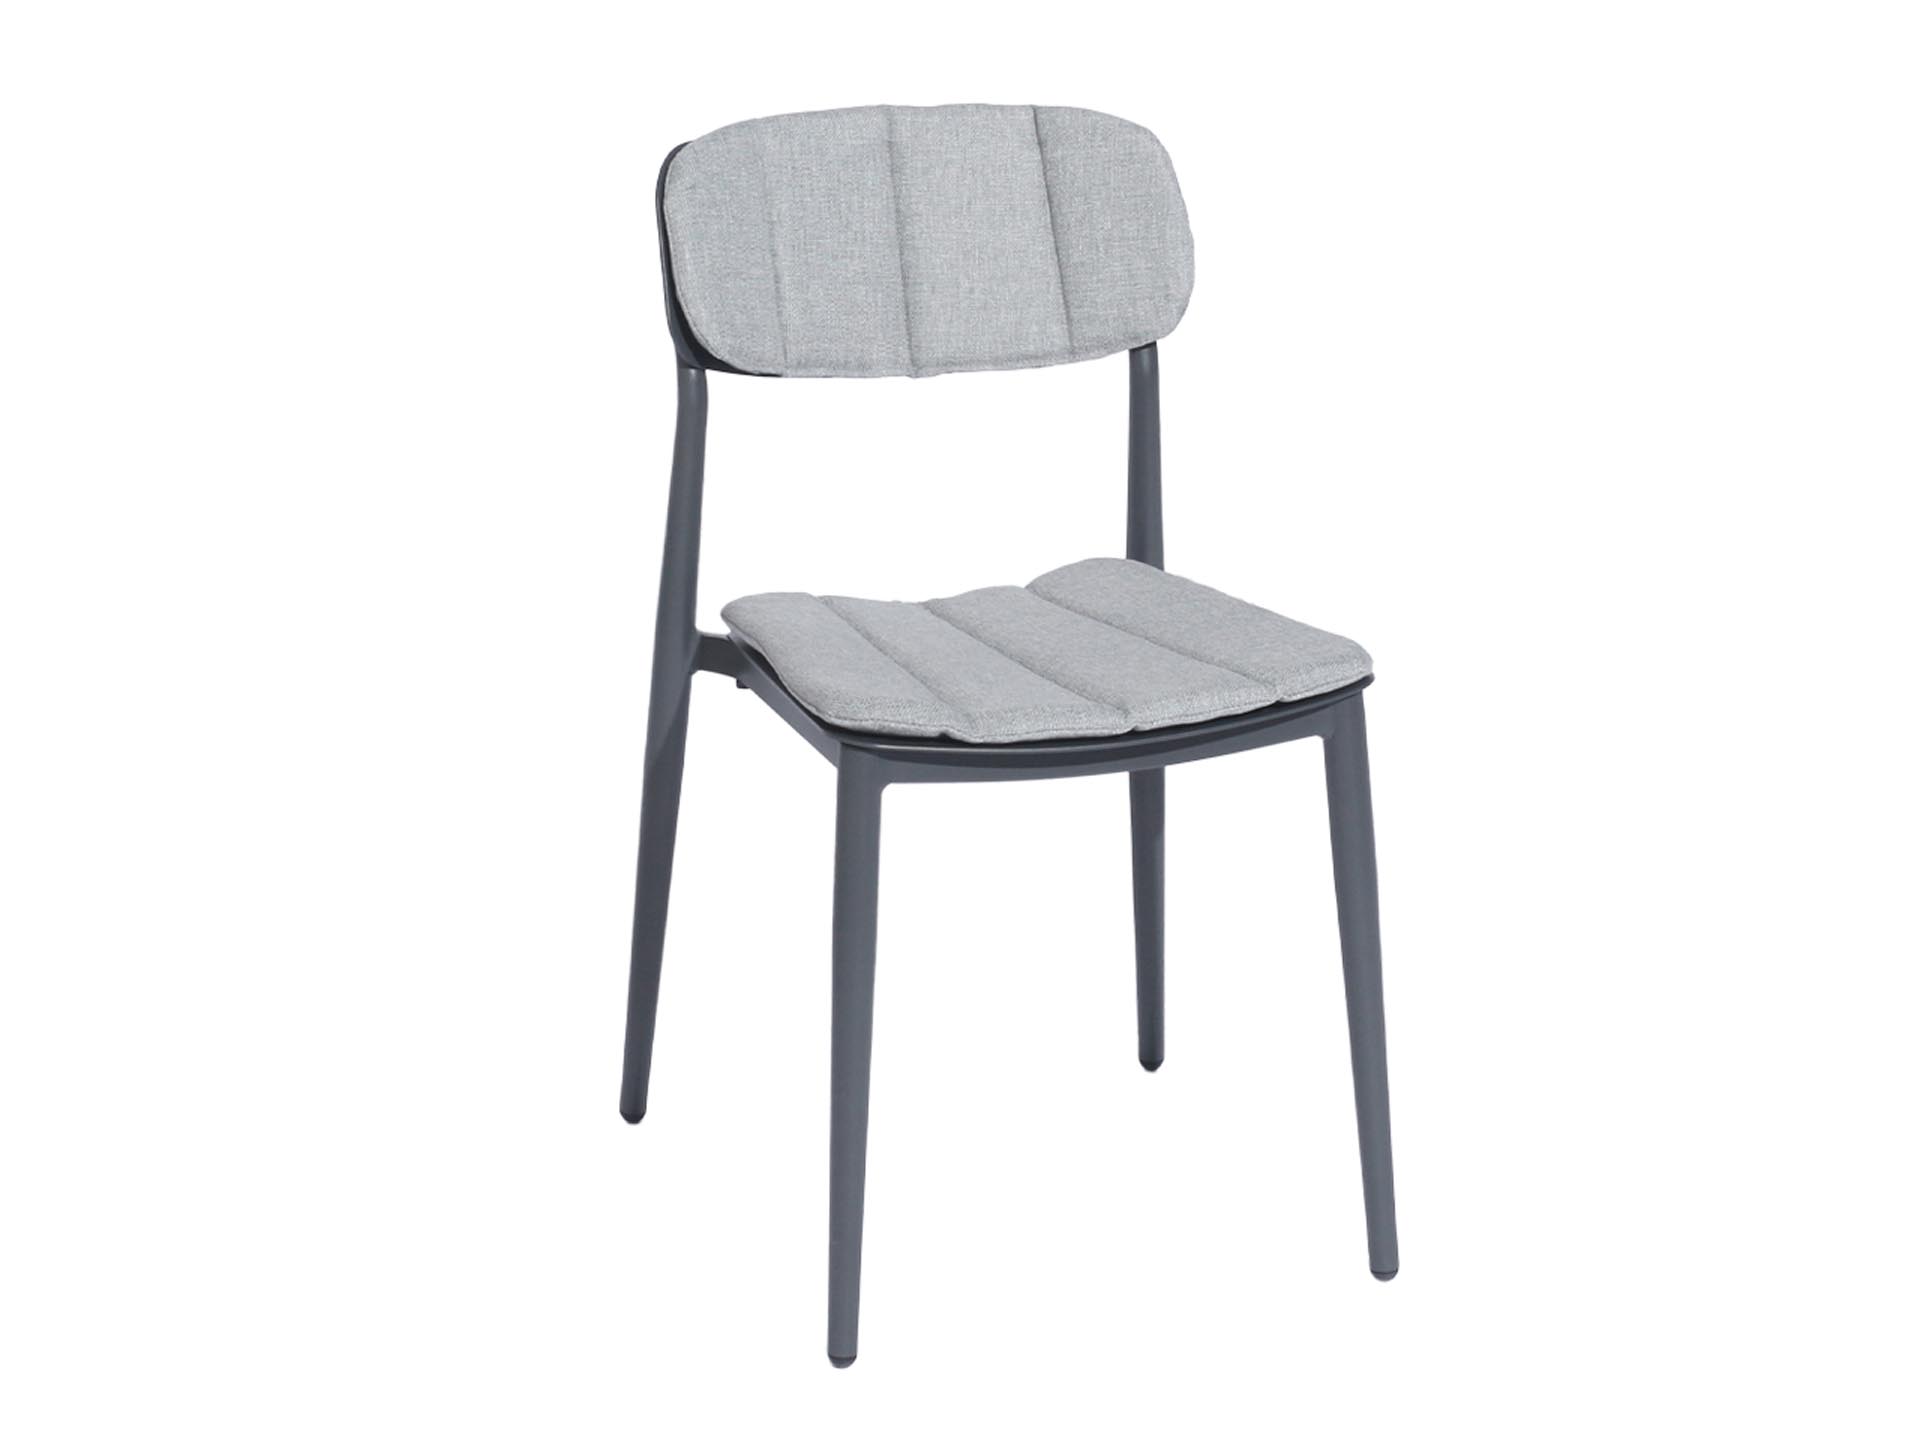 Chaise empilable rimini en aluminium grise